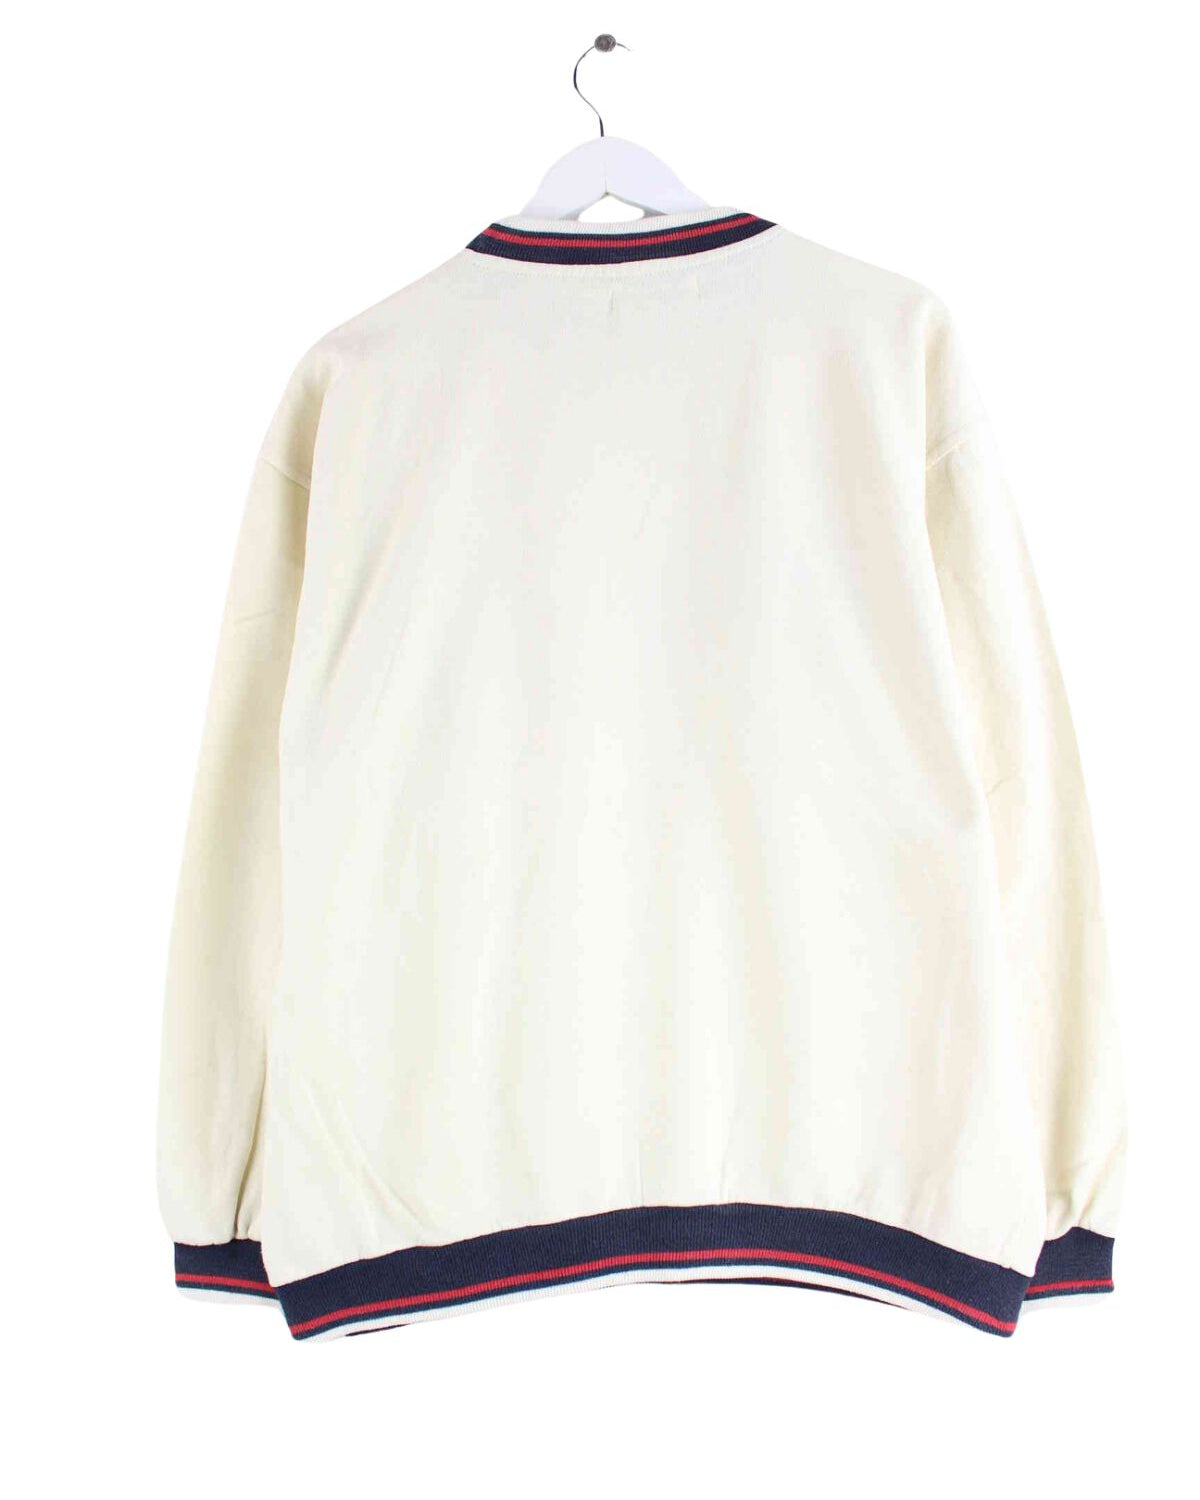 Fila 90s Vintage Embroidered Sweater Beige L (back image)